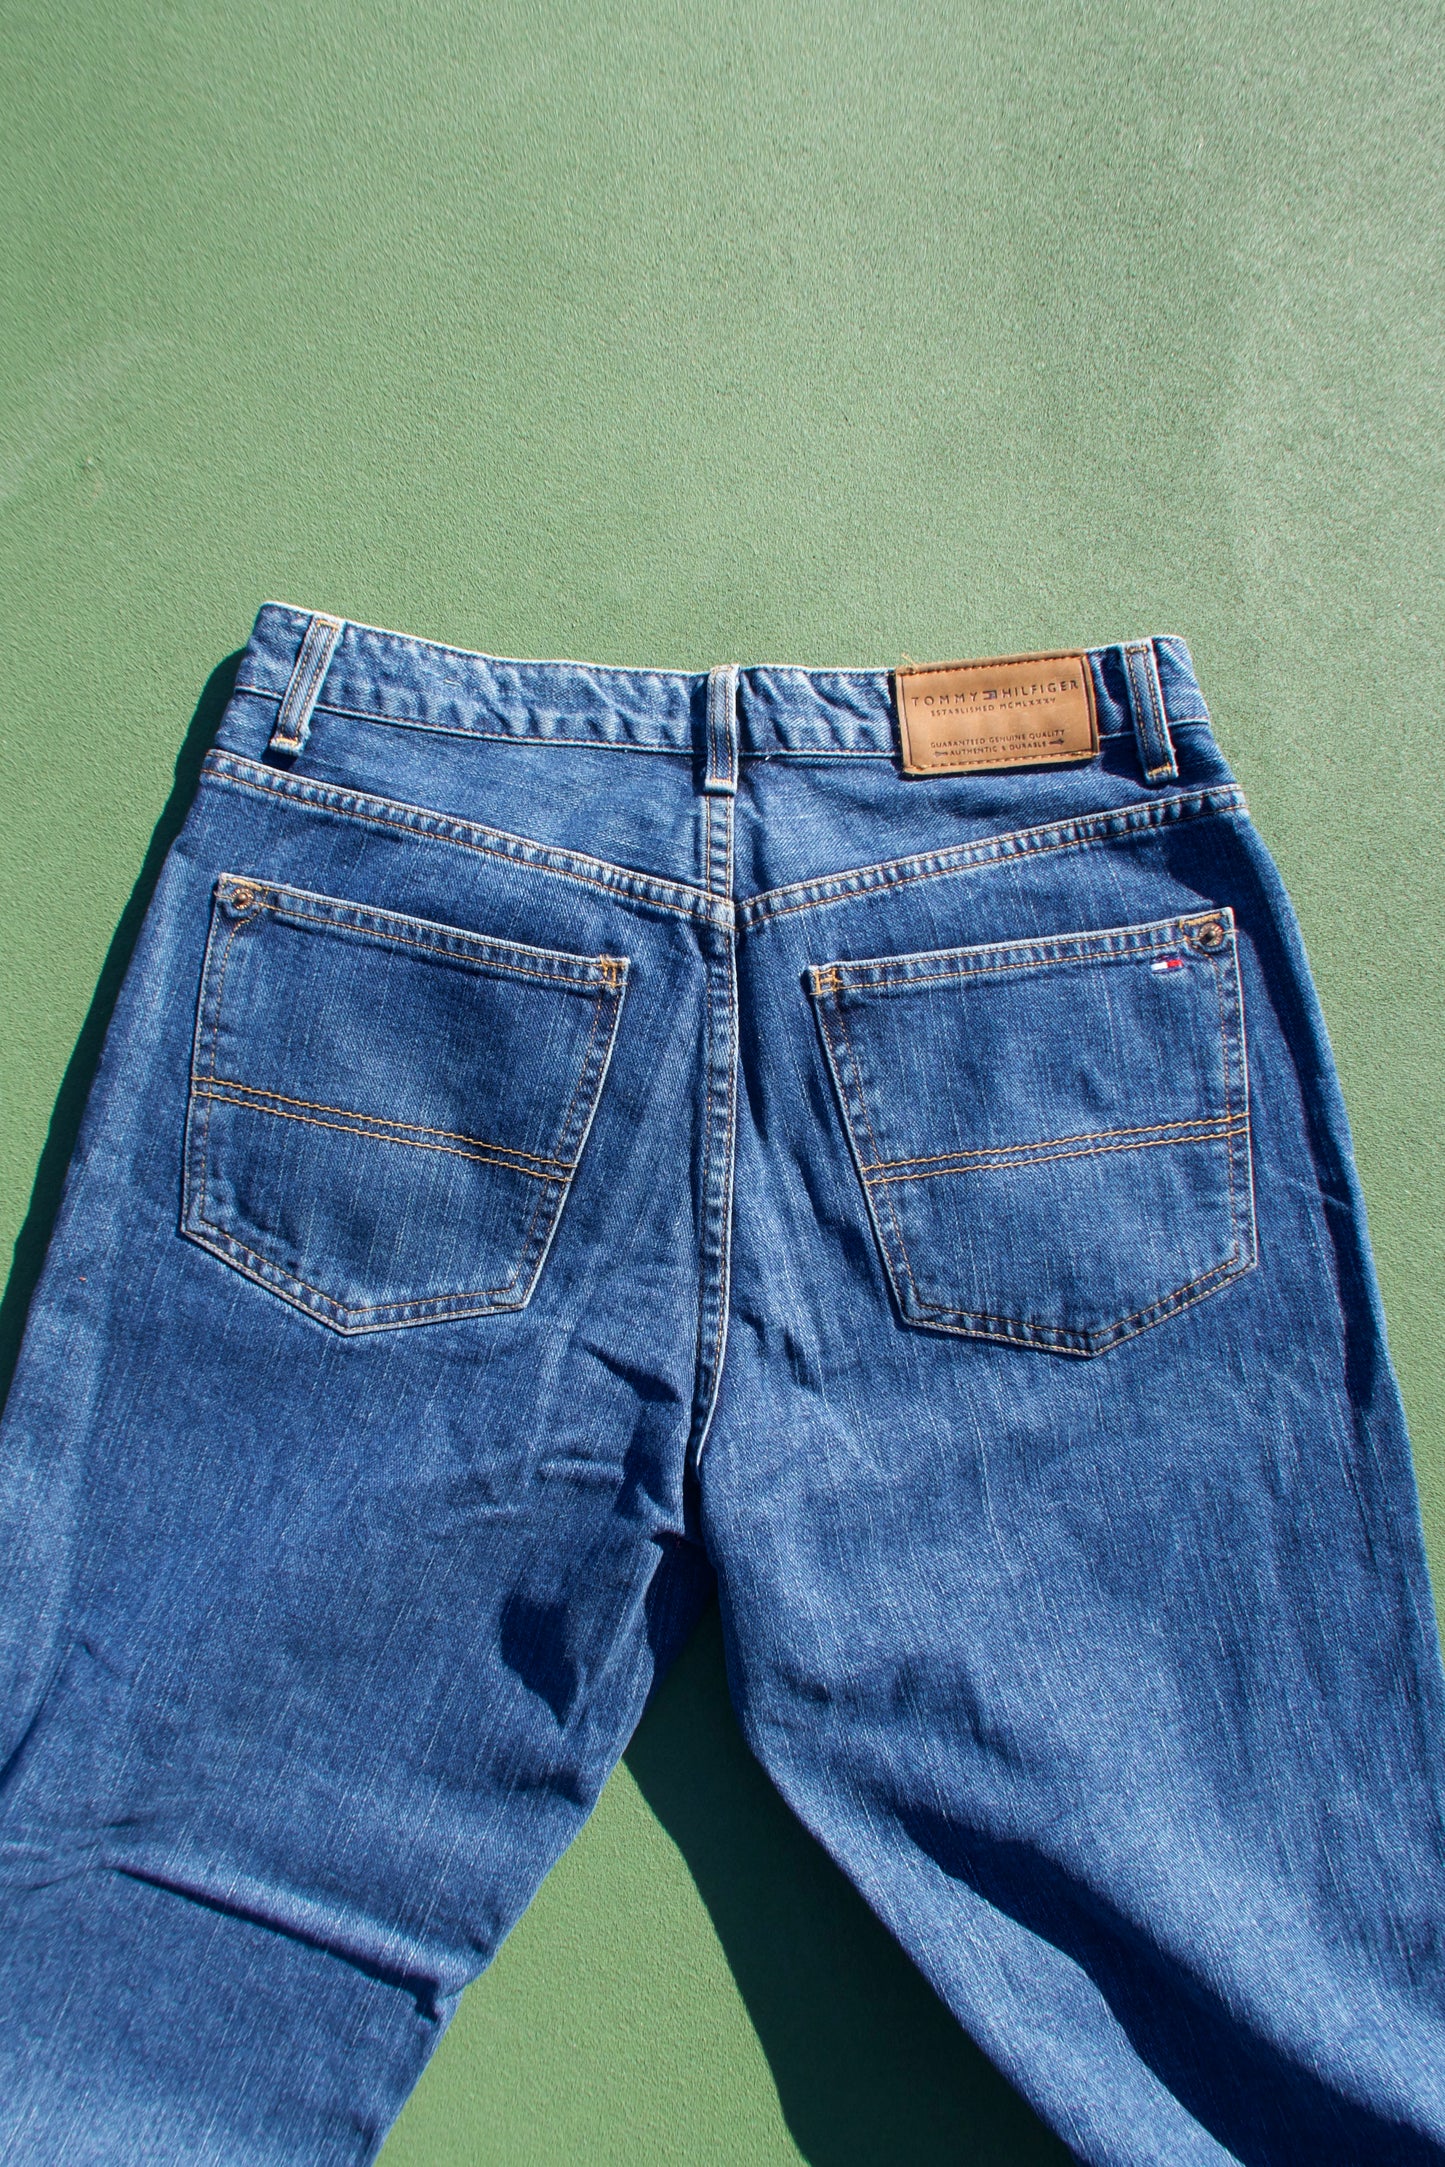 Vintage 90s Tommy Hilfiger Denim Jeans